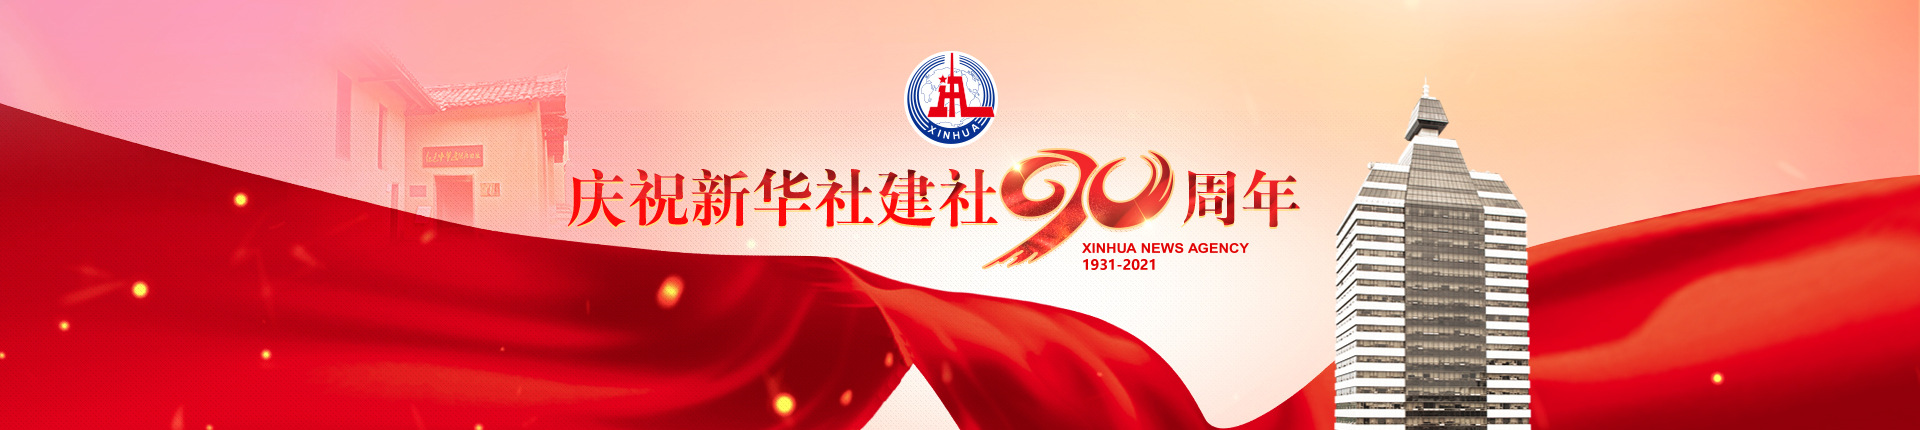 慶祝新華社建社90周年